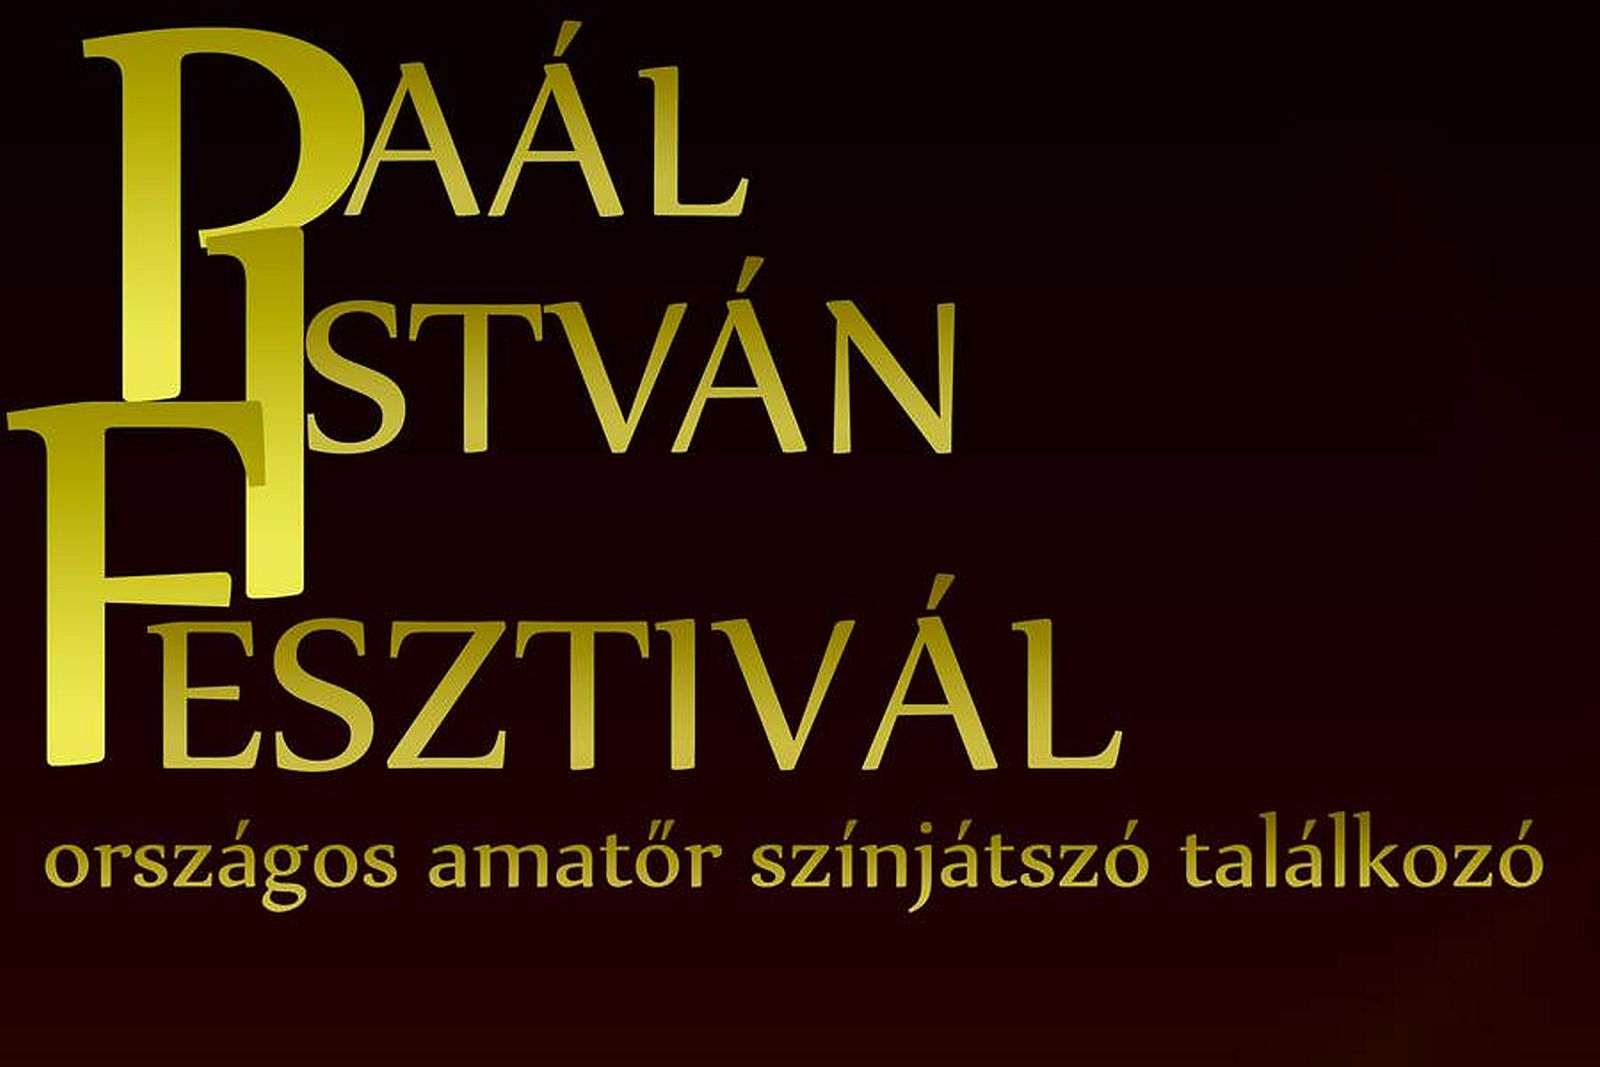 Hétvégén lesz a Paál István Fesztivál, országos amatőr színjátszó találkozó